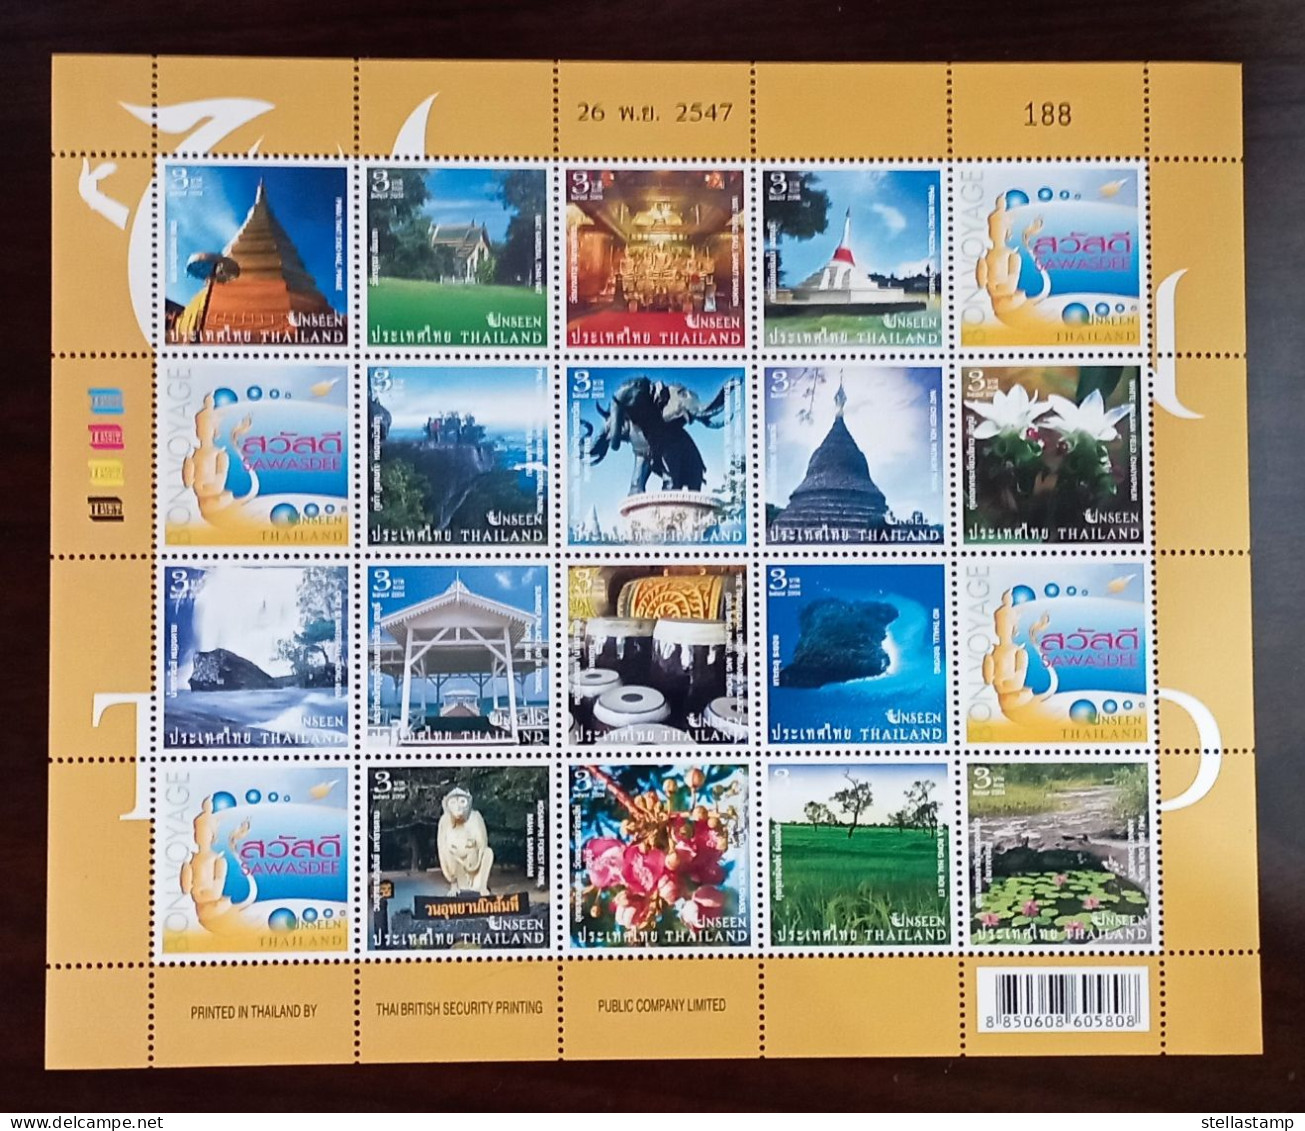 Thailand Stamp FS 2004 Unseen Thailand 4th - Thaïlande